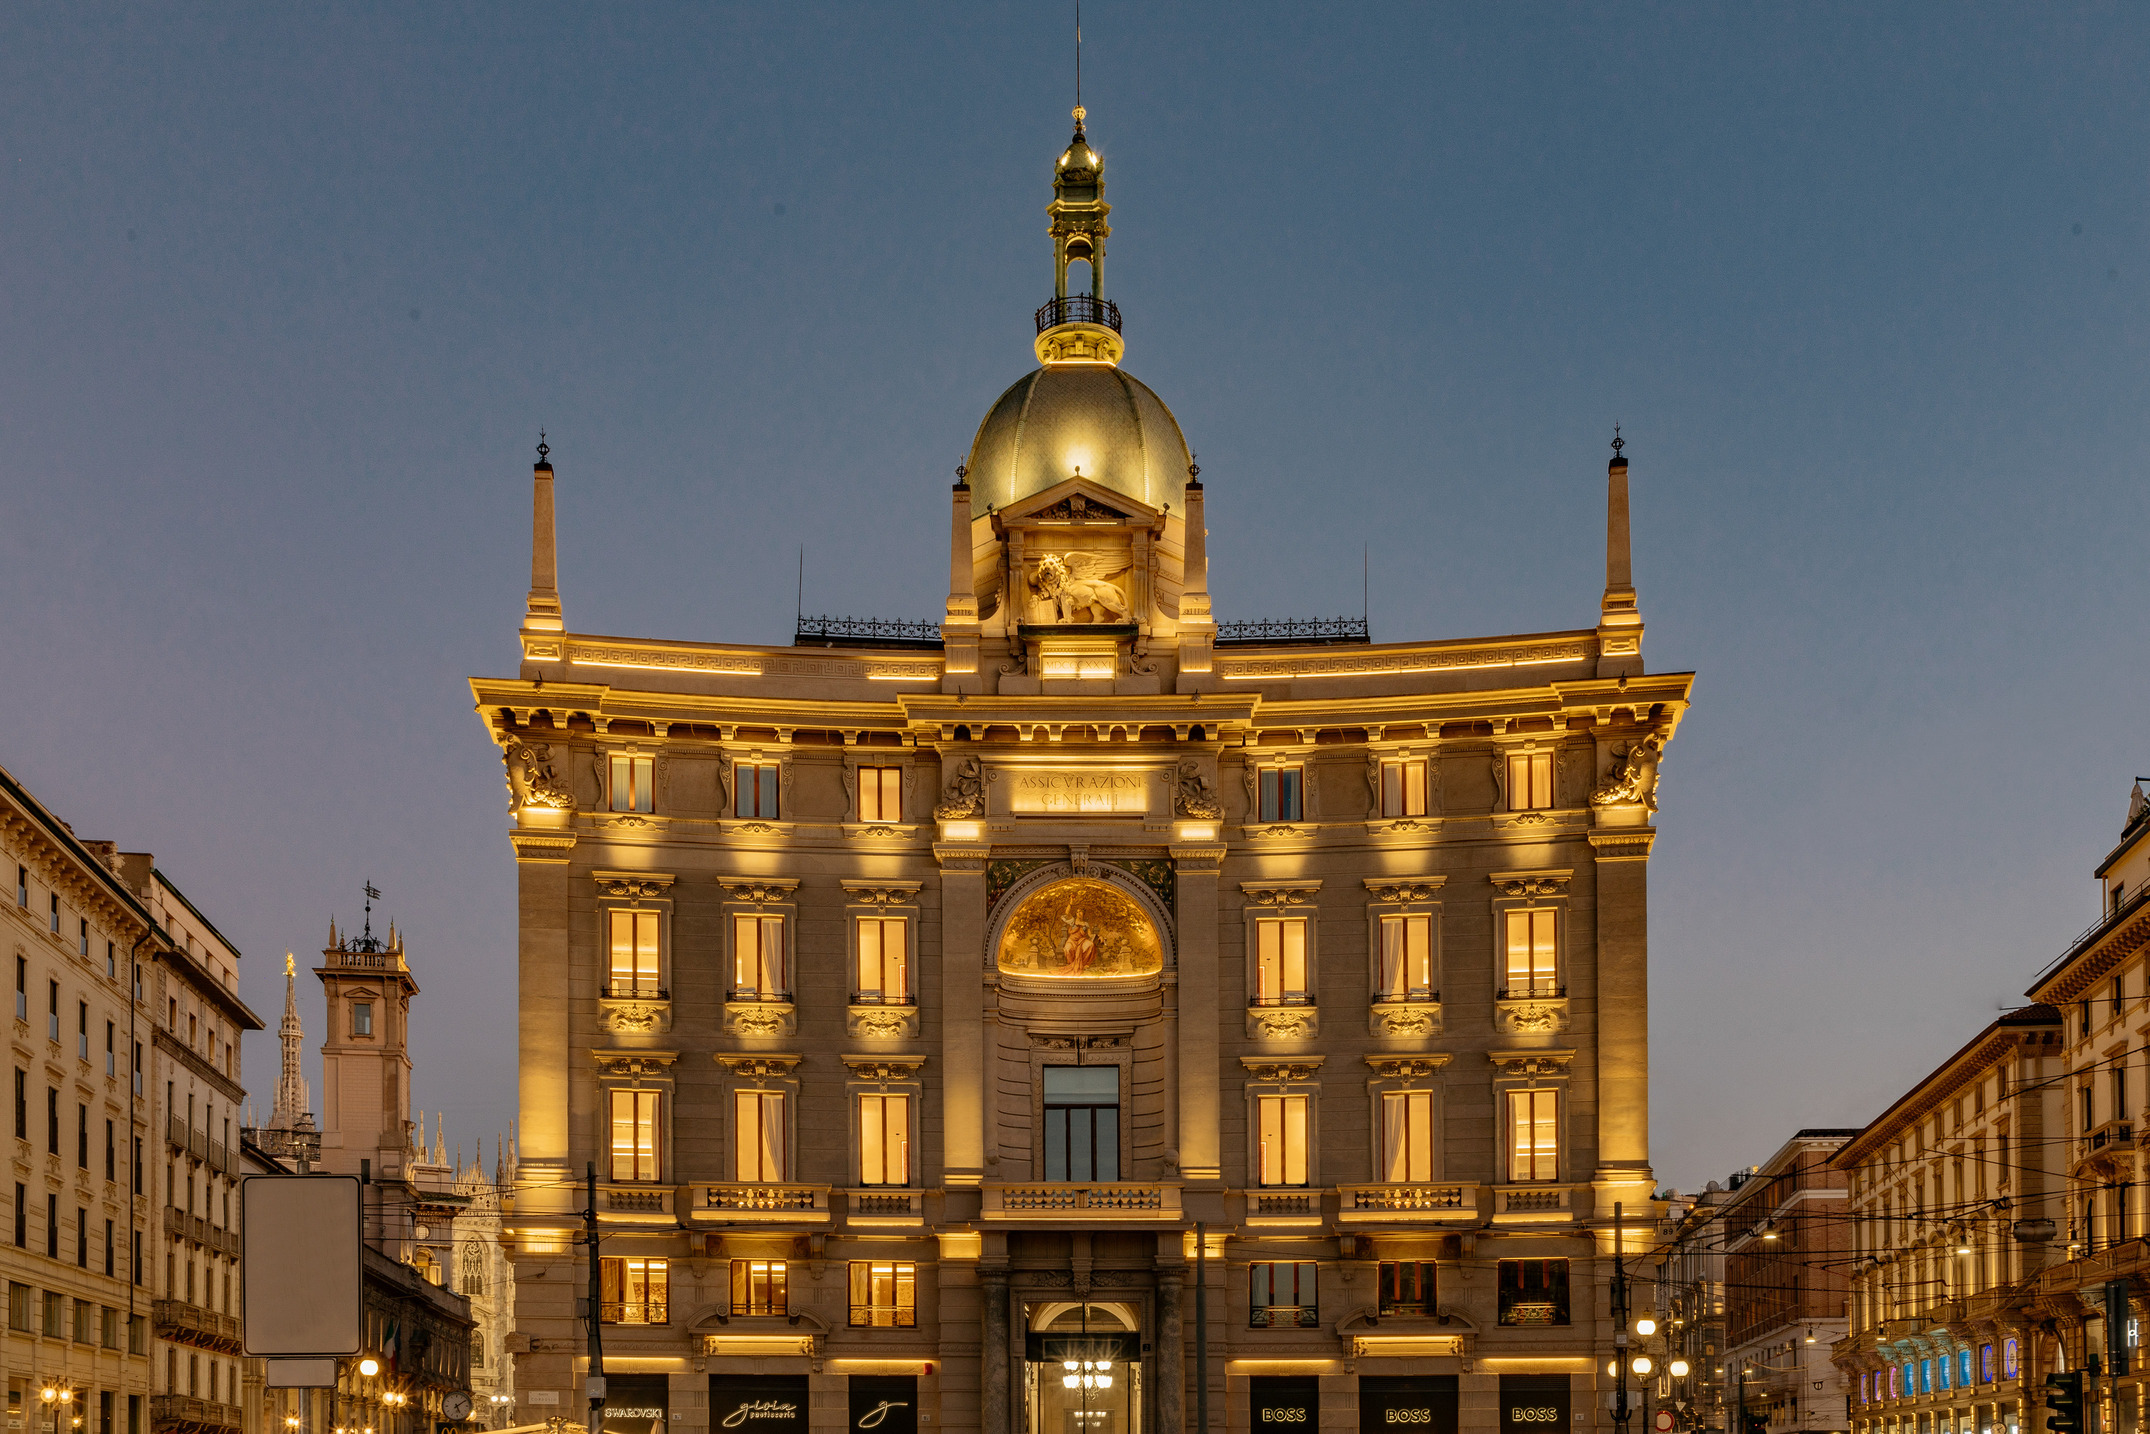 H Gran Meliá κατακτά το Μιλάνο εγκαινιάζοντας το νέο πολυτελές ξενοδοχείο Palazzo Cordusio